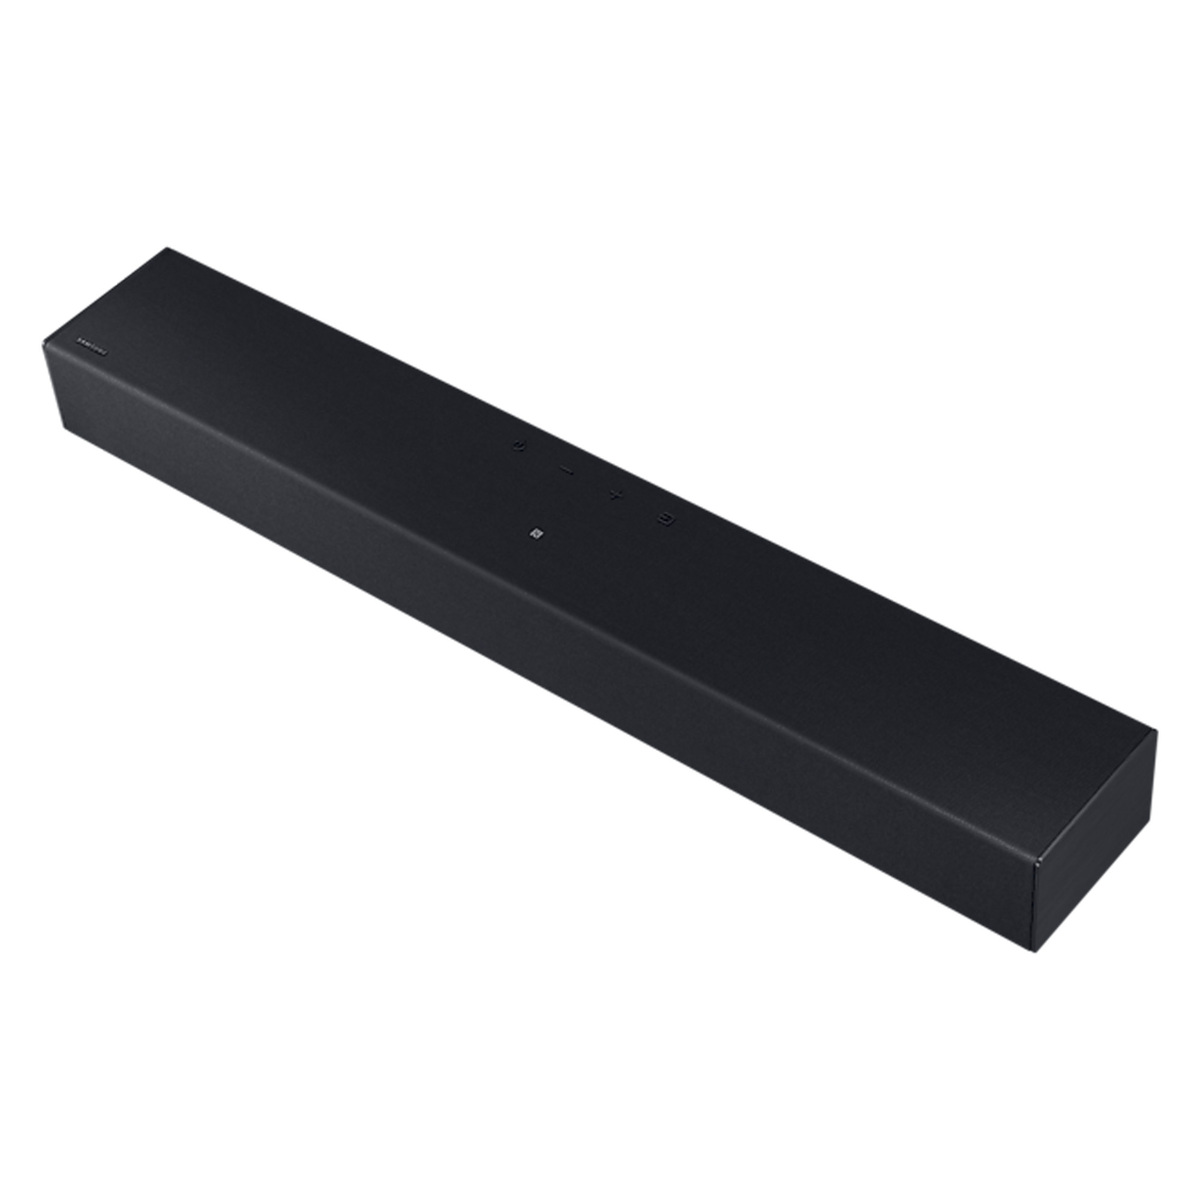 Samsung Essential B-Series Sound Bar, 2.0 Ch, Black, HW-C400/ZN